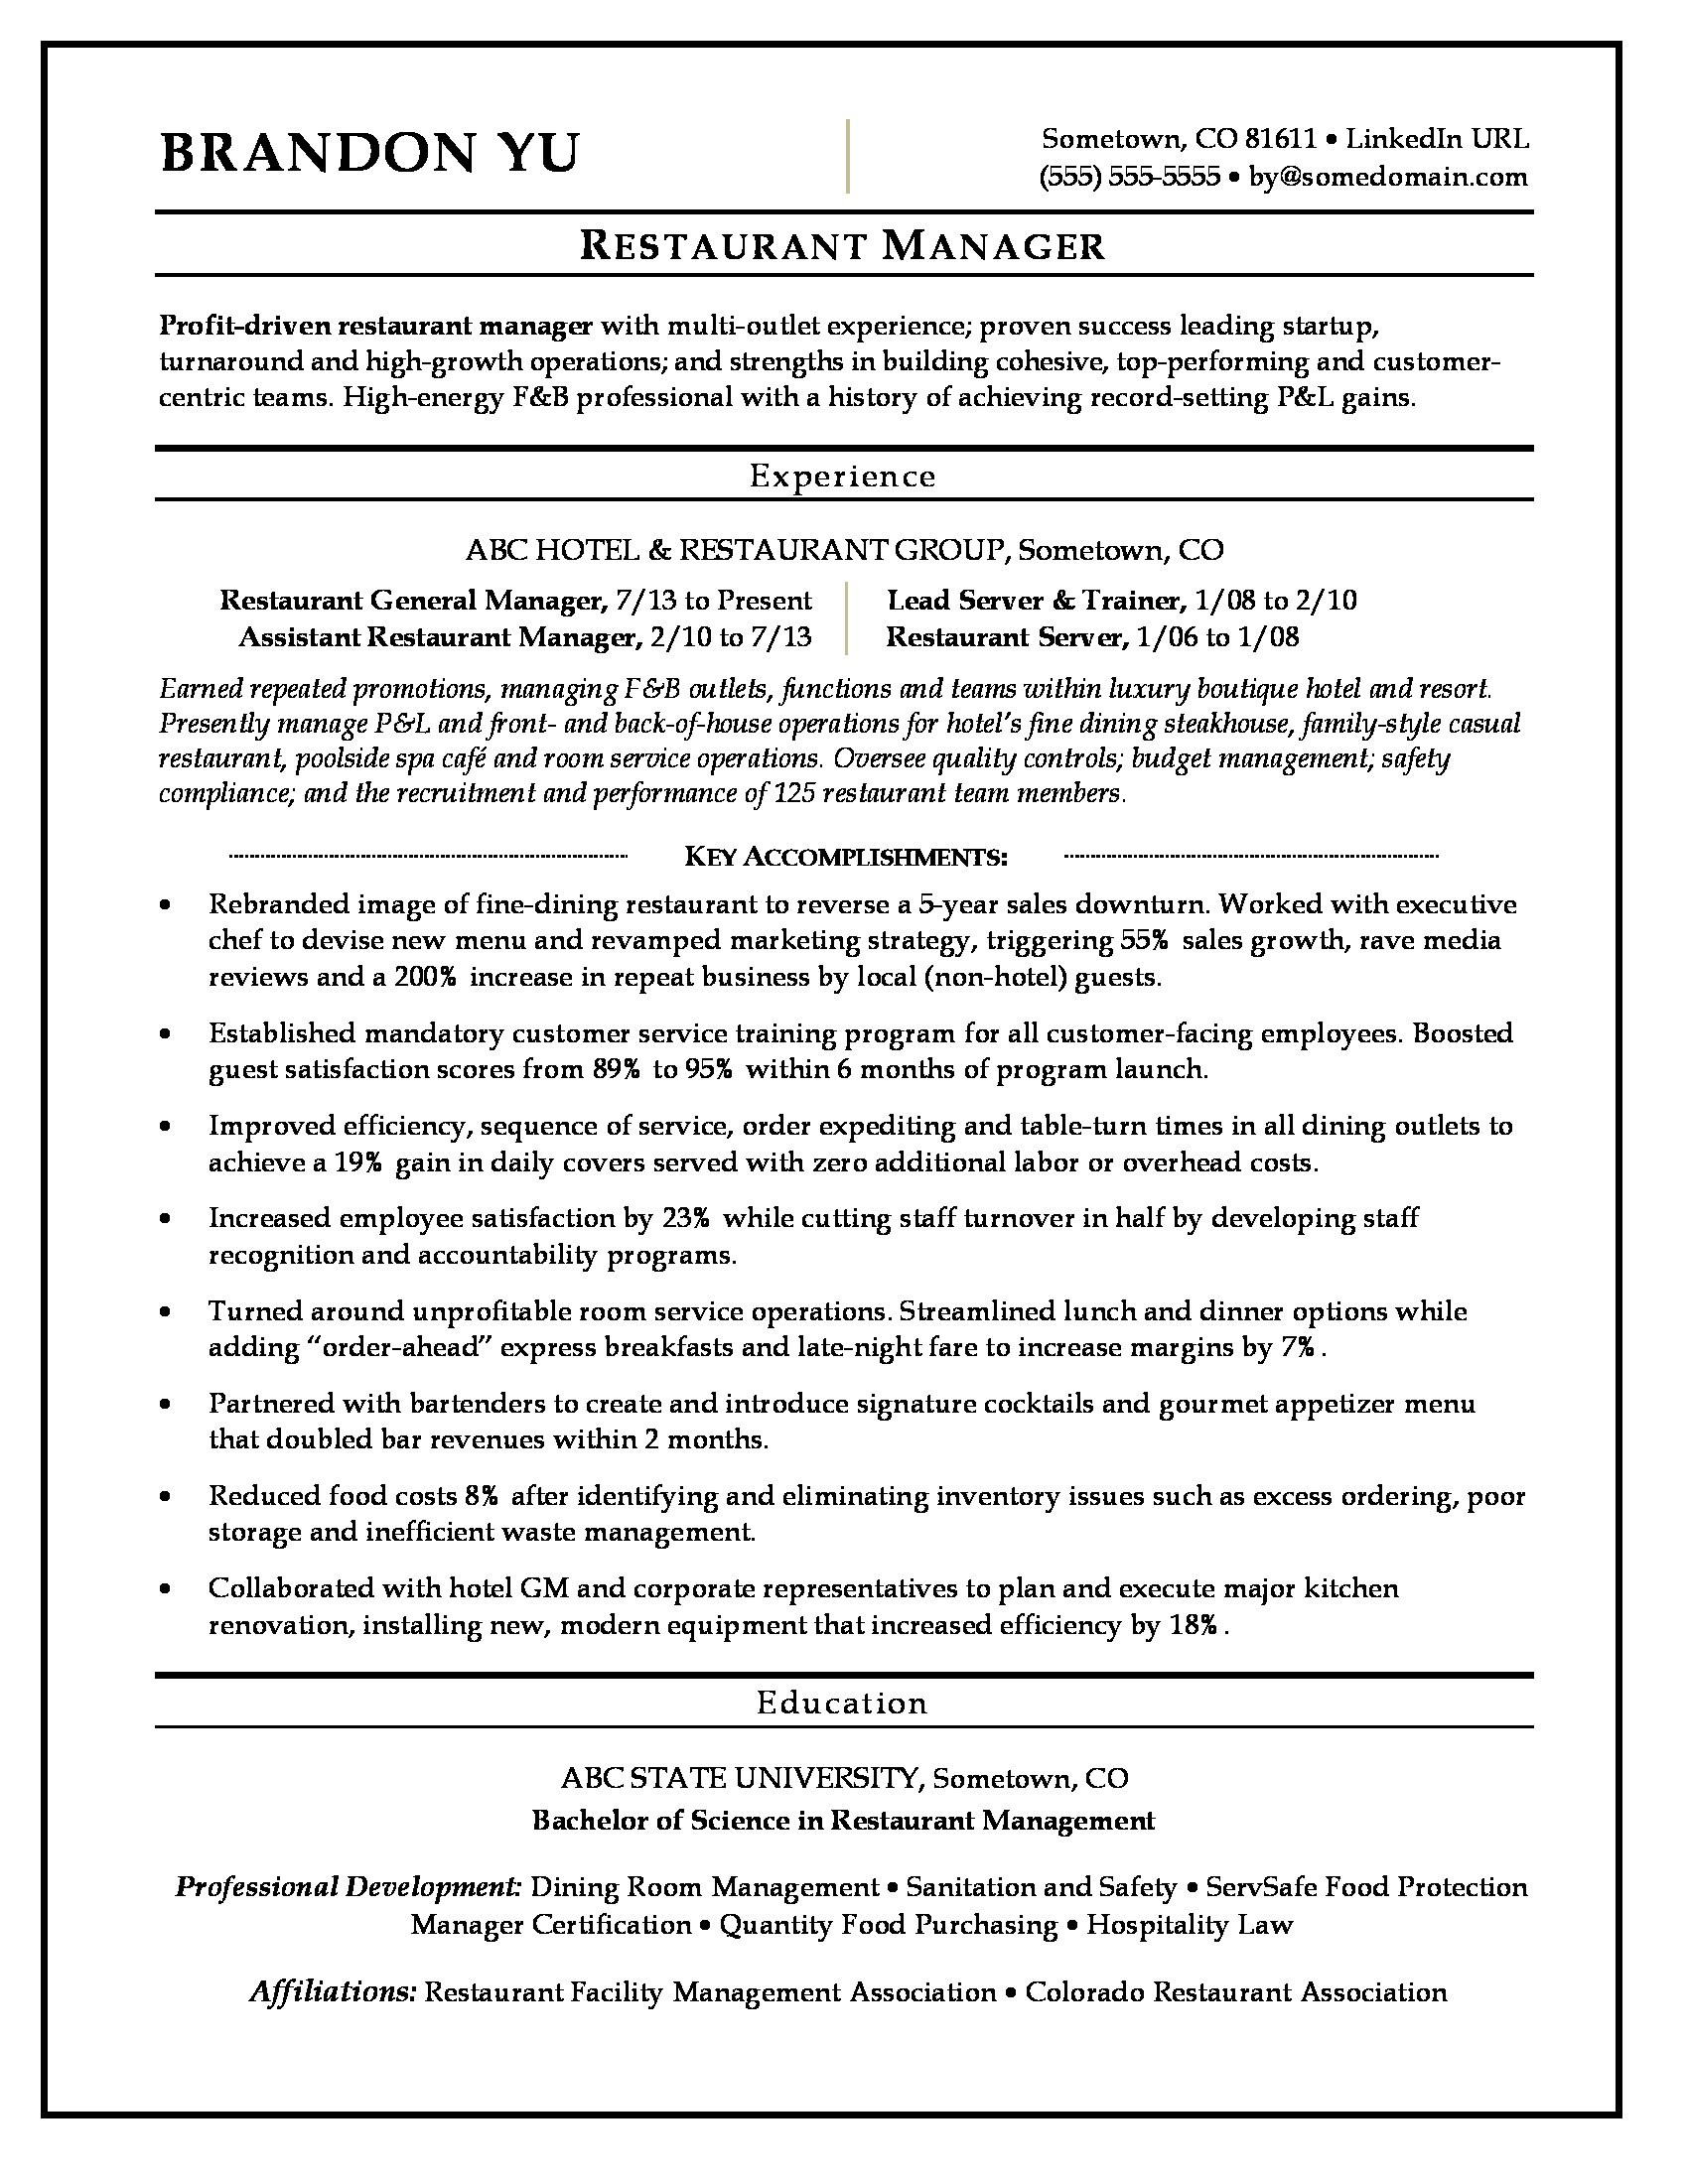 Sample Career Objective In Resume for Hotel and Restaurant Management Restaurant Manager Resume Sample Monster.com